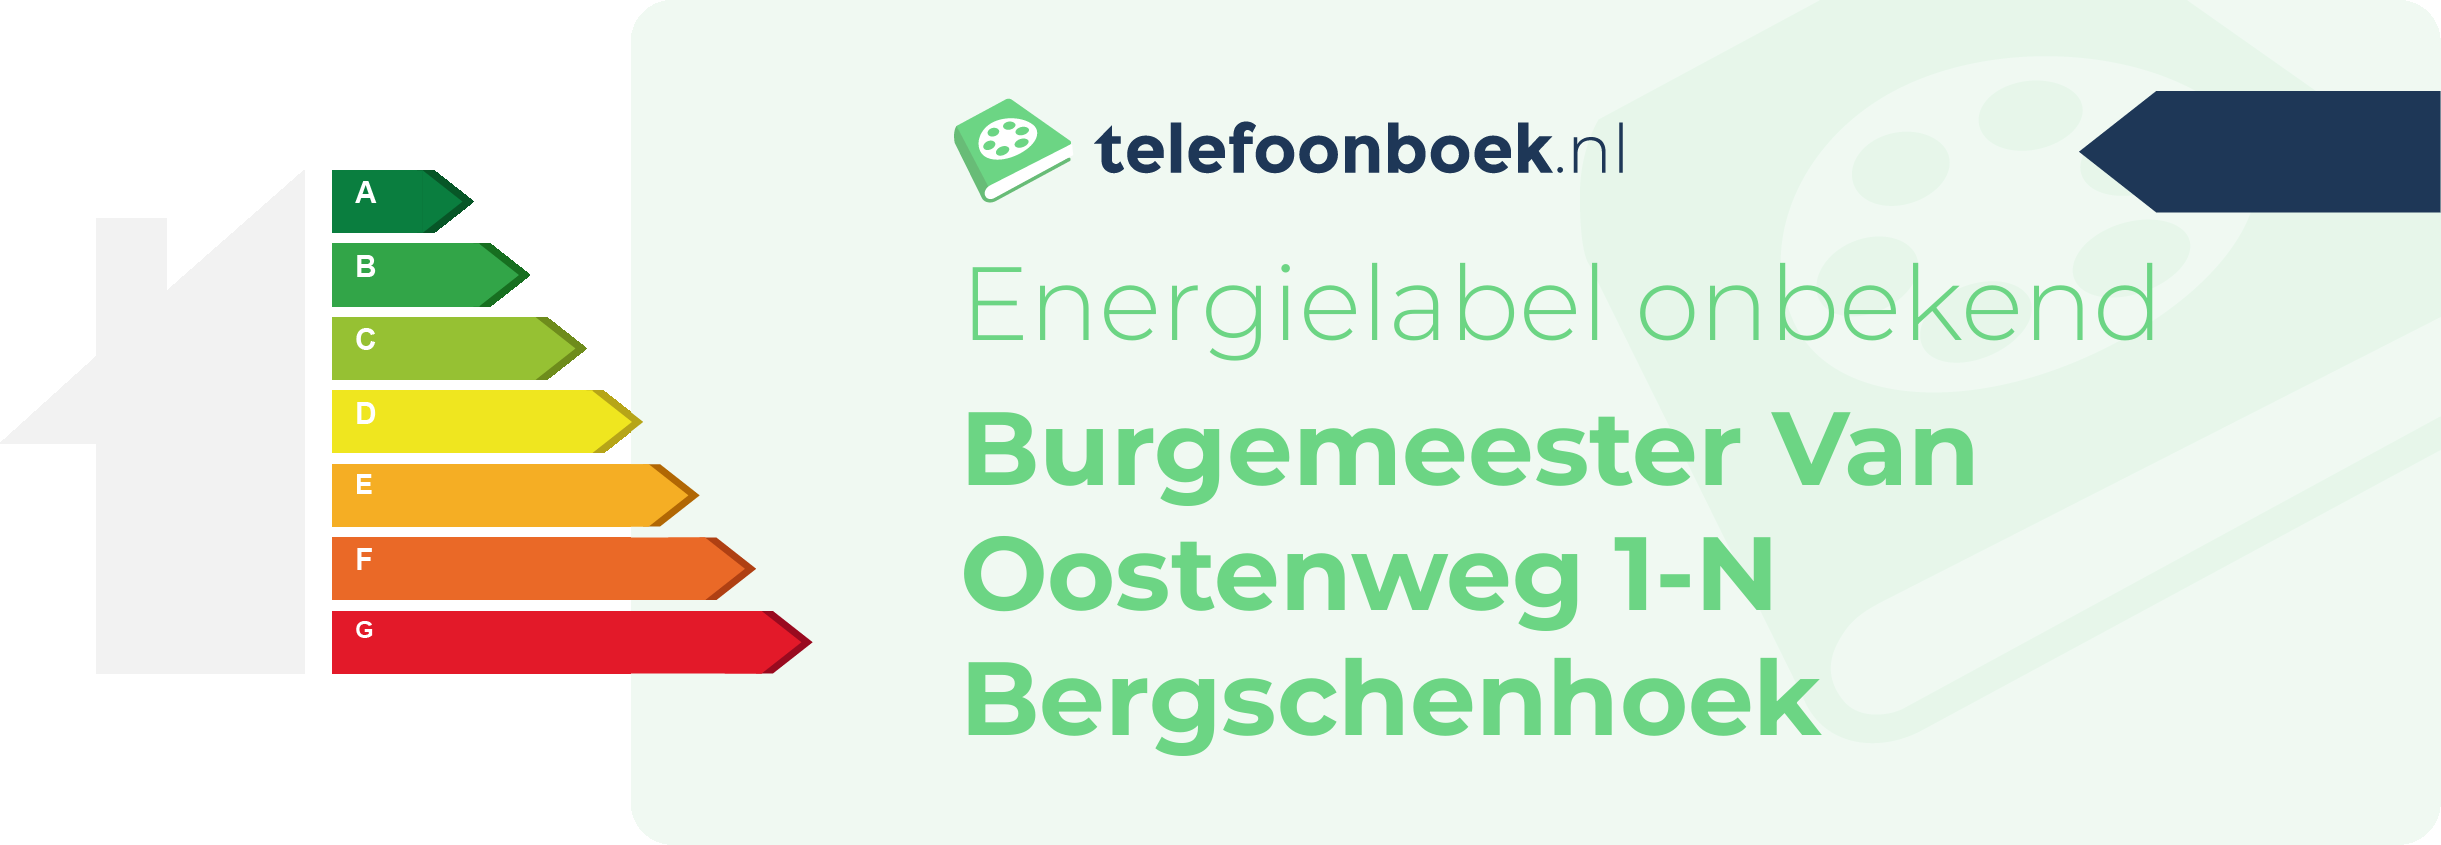 Energielabel Burgemeester Van Oostenweg 1-N Bergschenhoek